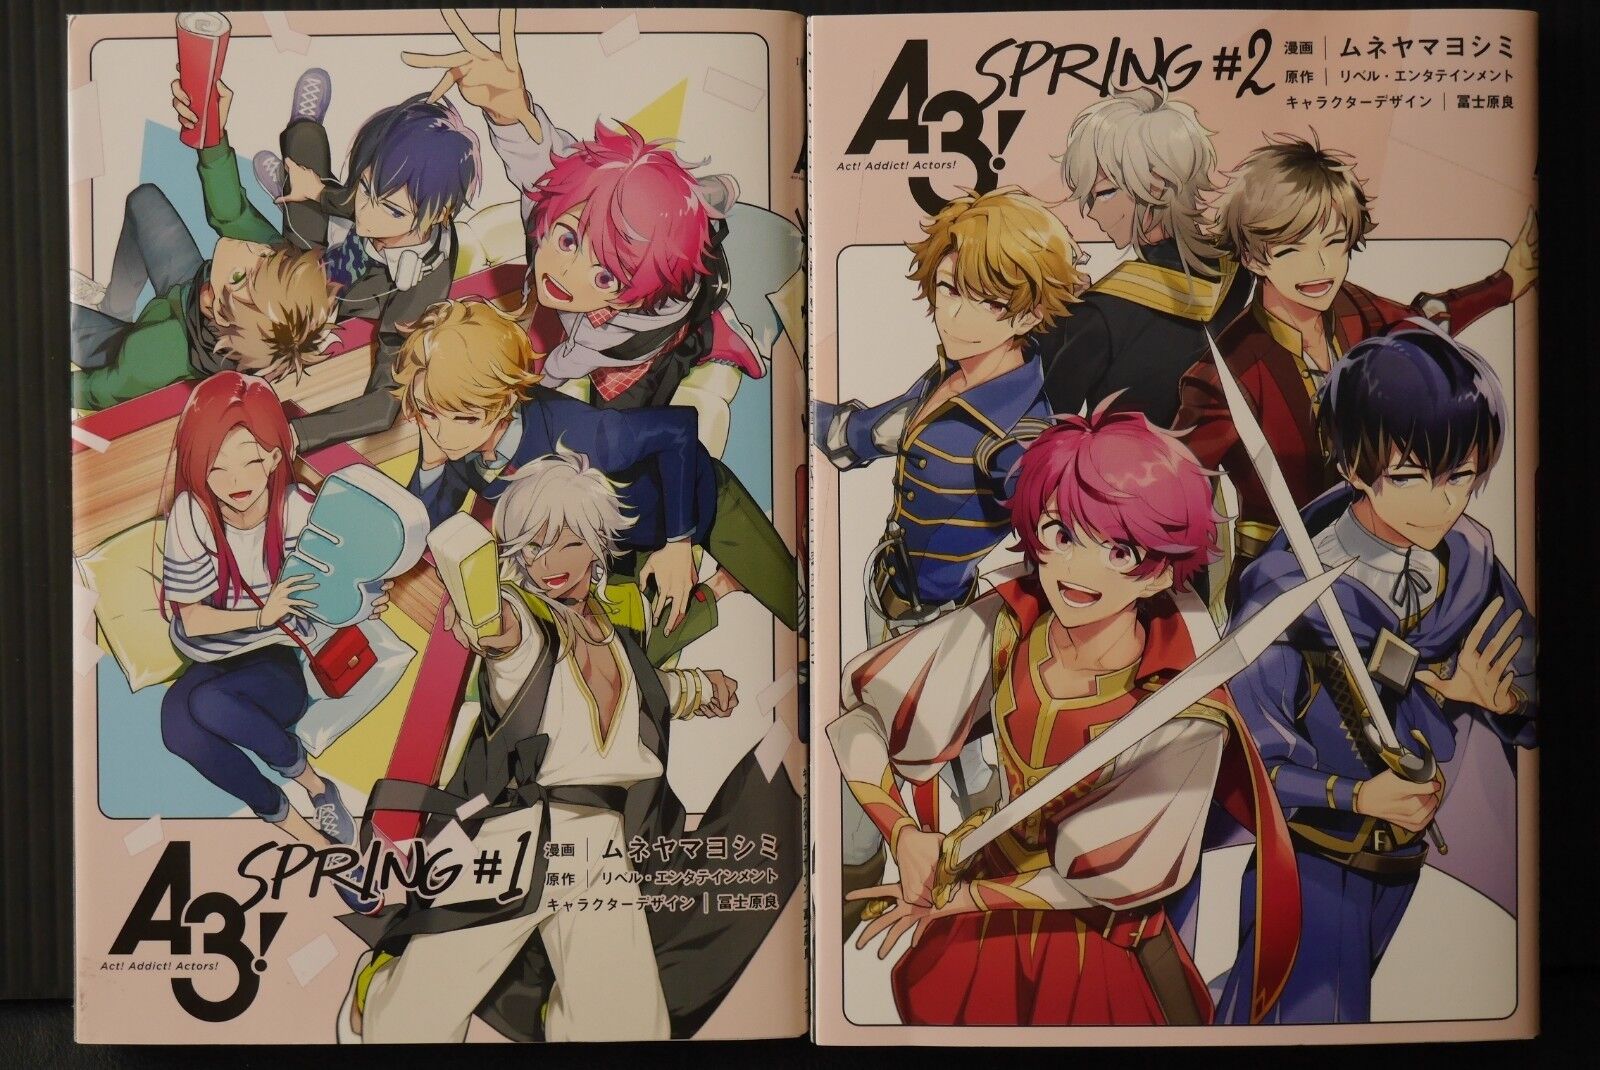 JAPAN manga LOT: A3 (Act Addict Actors) Spring vol.1+2 Complete Set